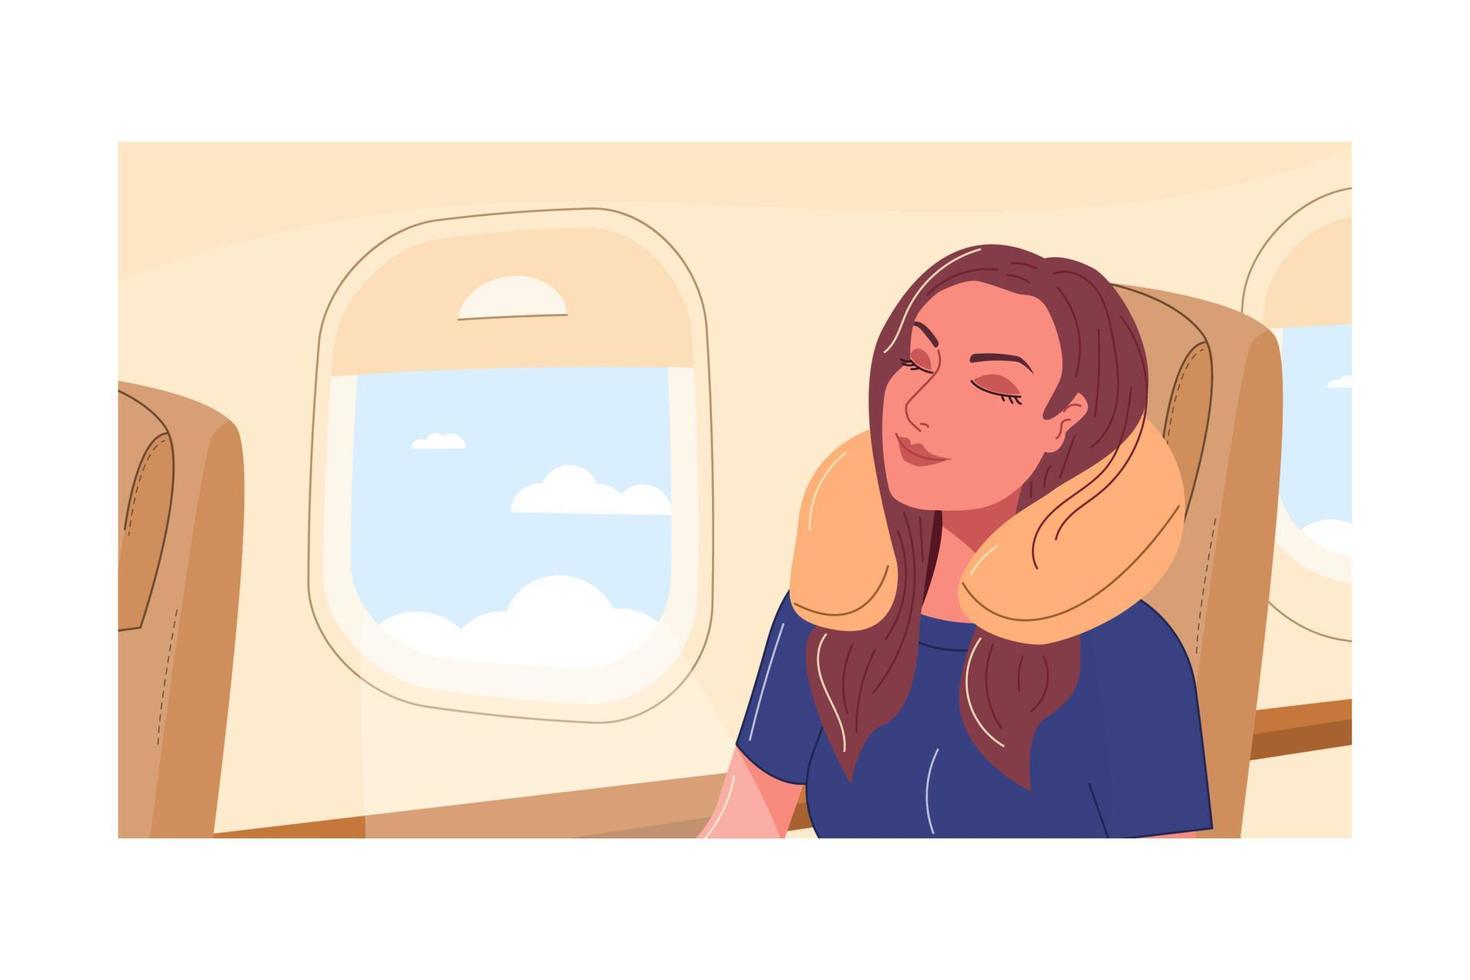 passageiro viajando no avião está dormindo. jovem senta-se na vigia e descansa durante o voo. turista feminina usa almofada de sono inflável. ilustração vetorial plana do personagem viajante vetor